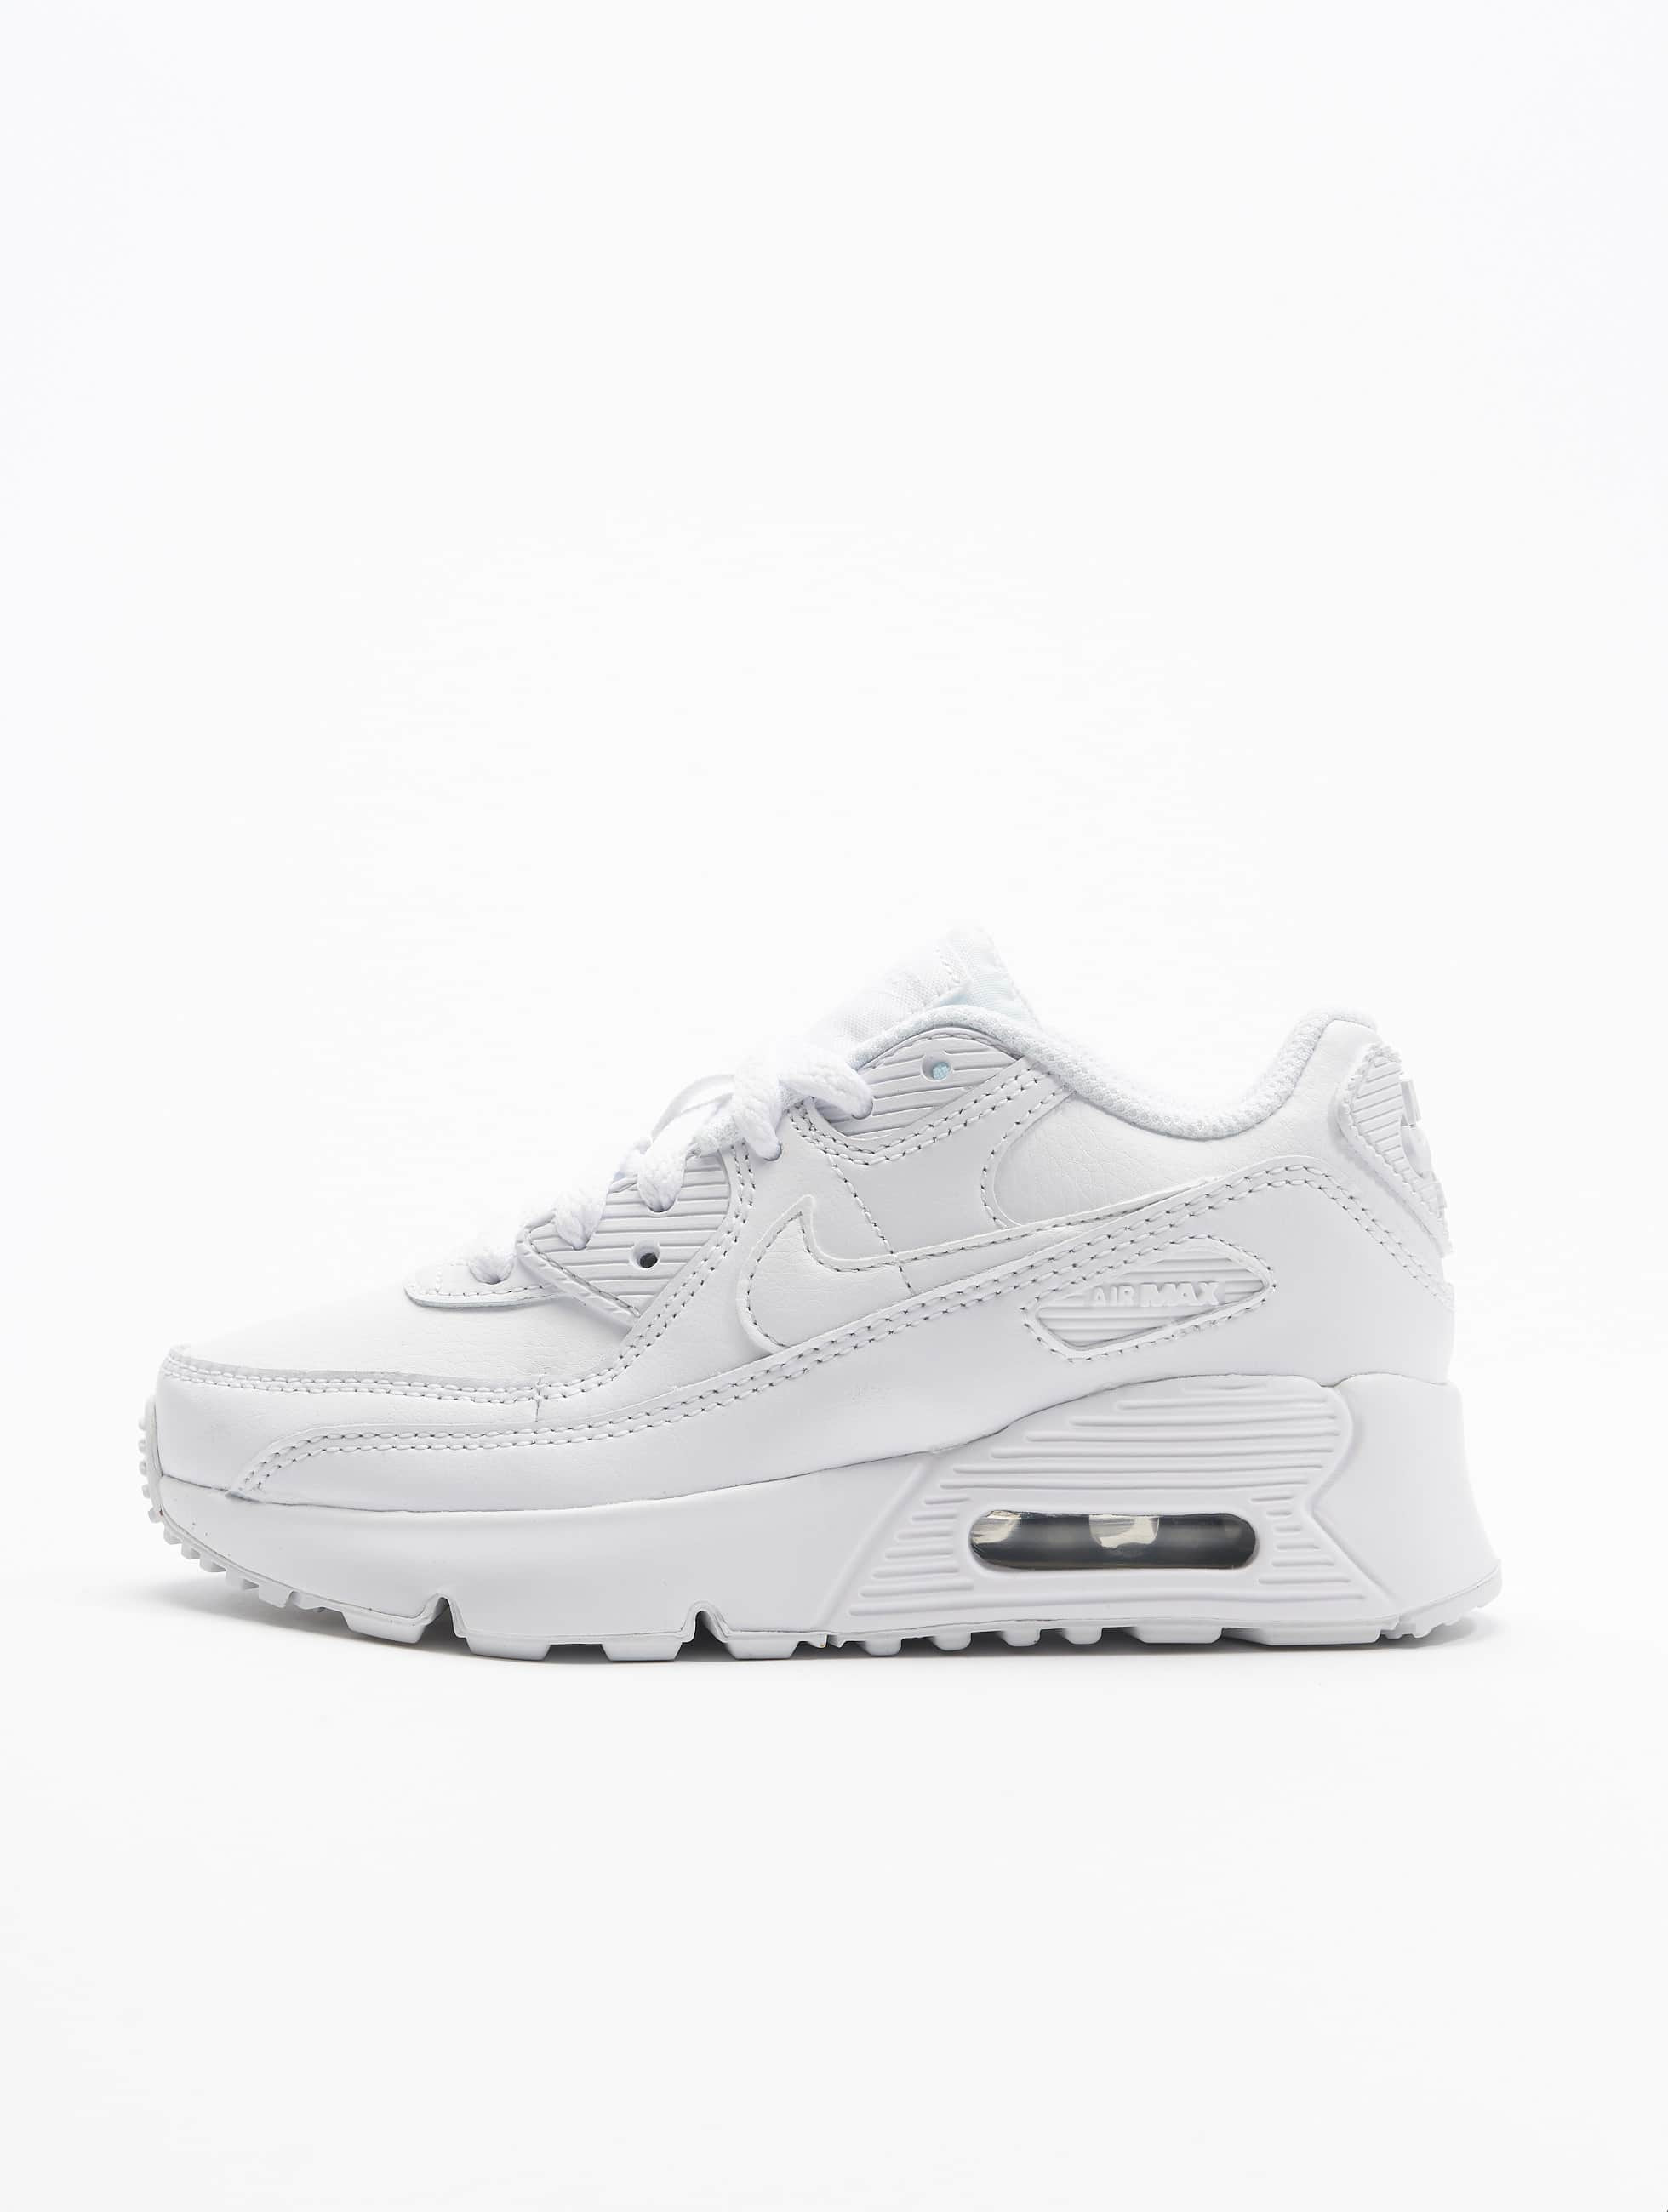 Herenhuis Voorwaardelijk salami Nike schoen / sneaker Air Max 90 Ltr (PS) in wit 824526